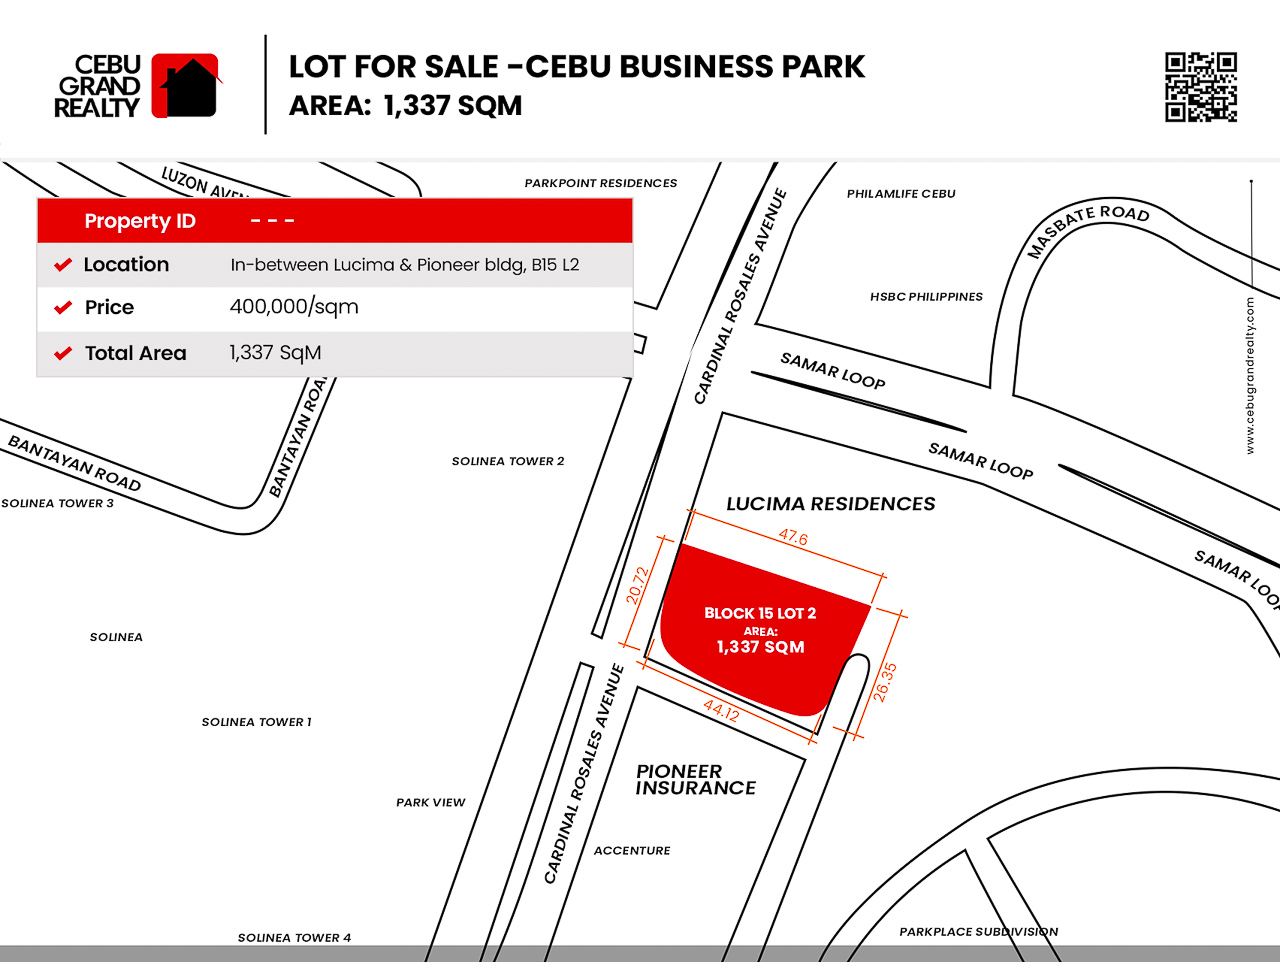 SLCC8 1337 SqM Lot for Sale in Cebu Business Park - 2